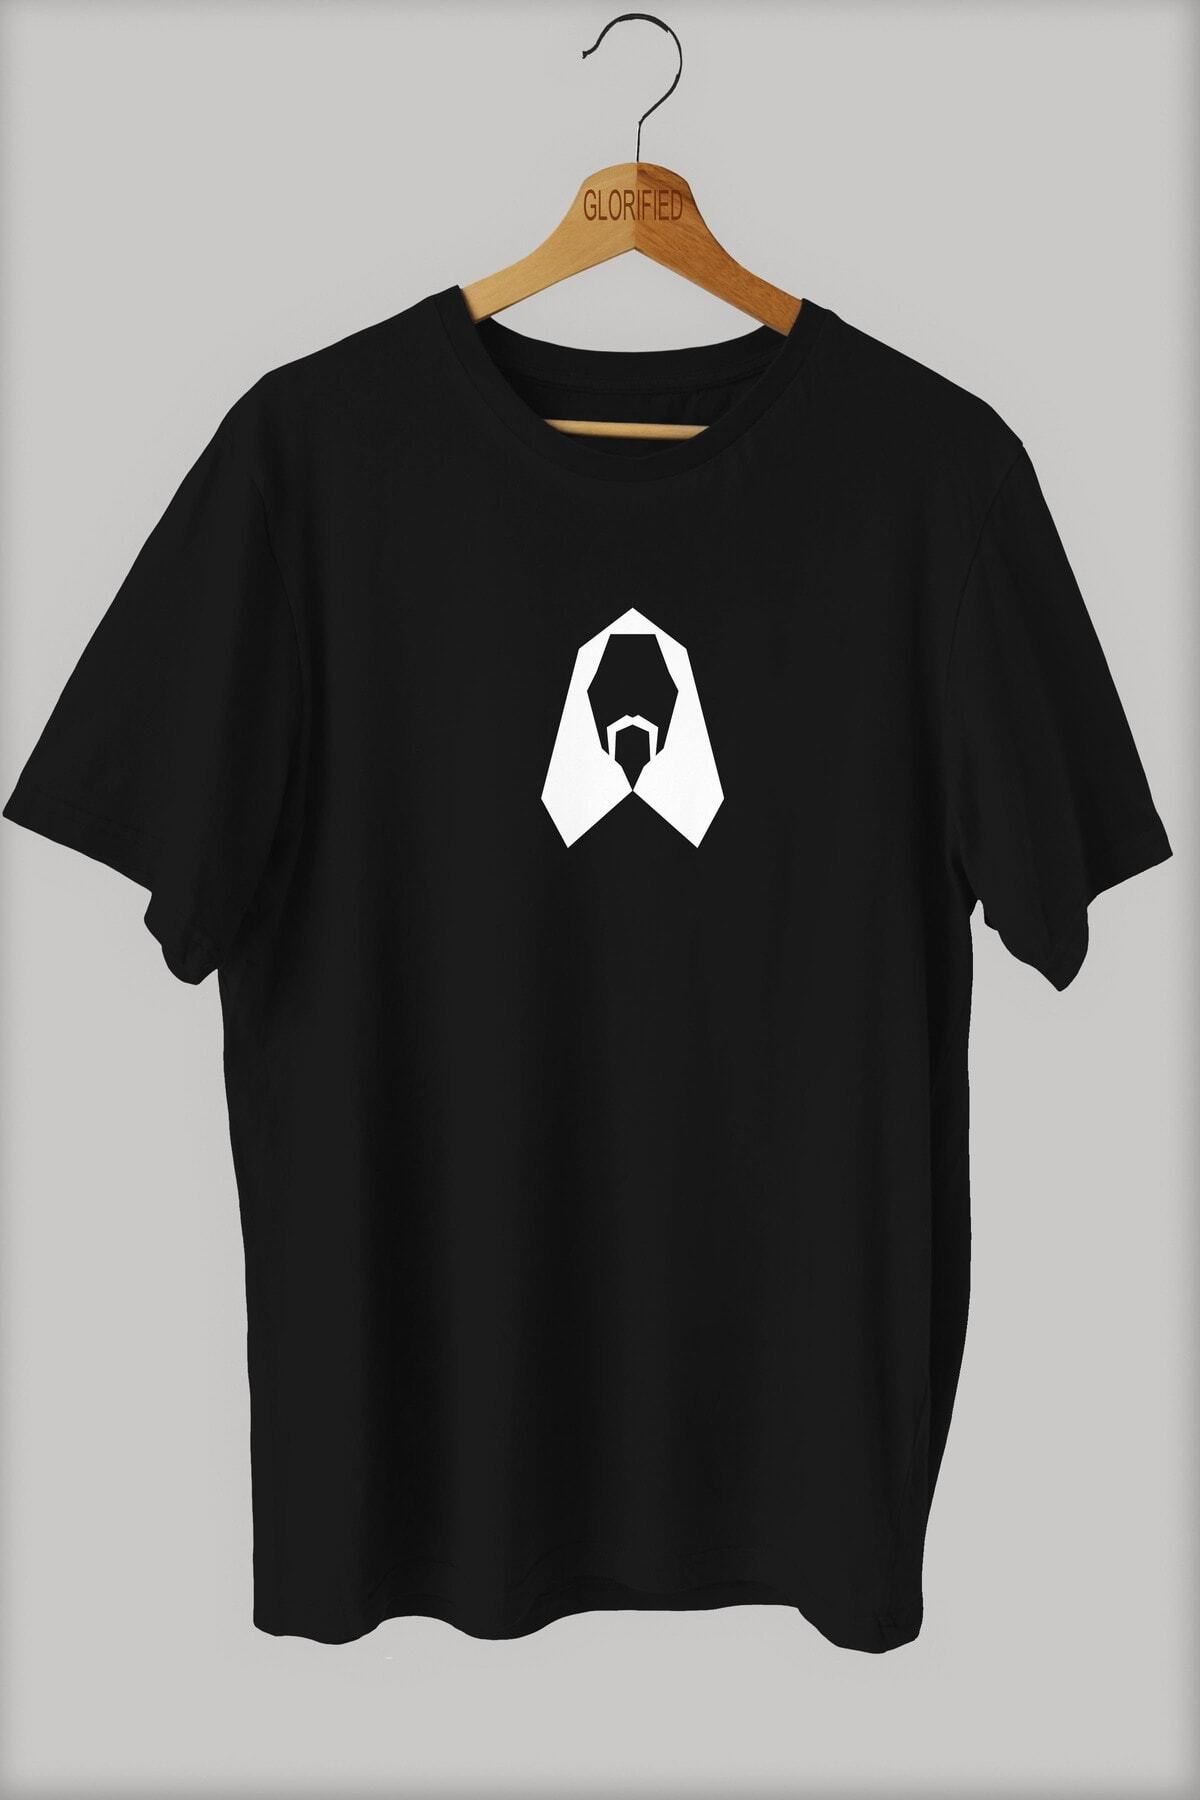 MEDUSA TASARIM ATÖLYESİ Barış Manço Baskılı Oversize T-shirt ( Tişört ) %100 Cotton